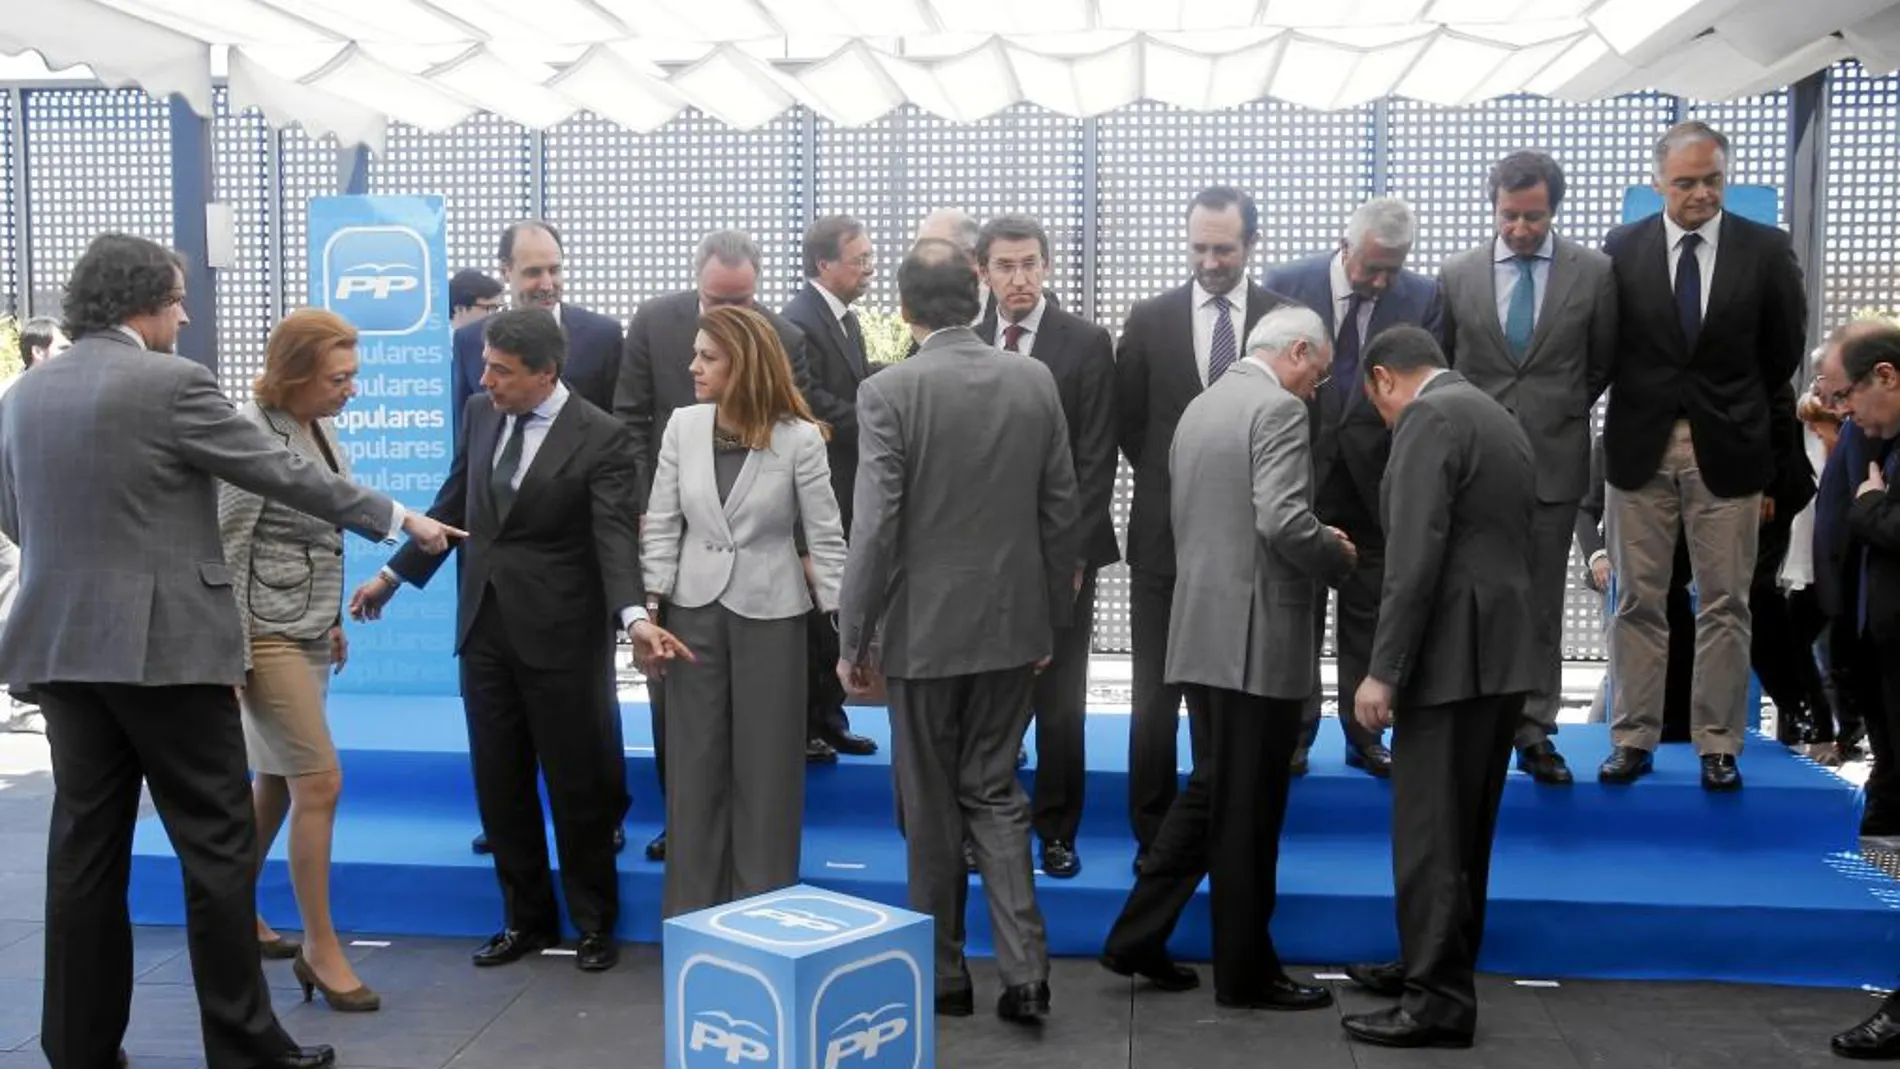 Rajoy, de espaldas, se dirige hacia su lugar junto a Cospedal mientras a Luisa Fernanda Rudi le indican dónde debe situarse